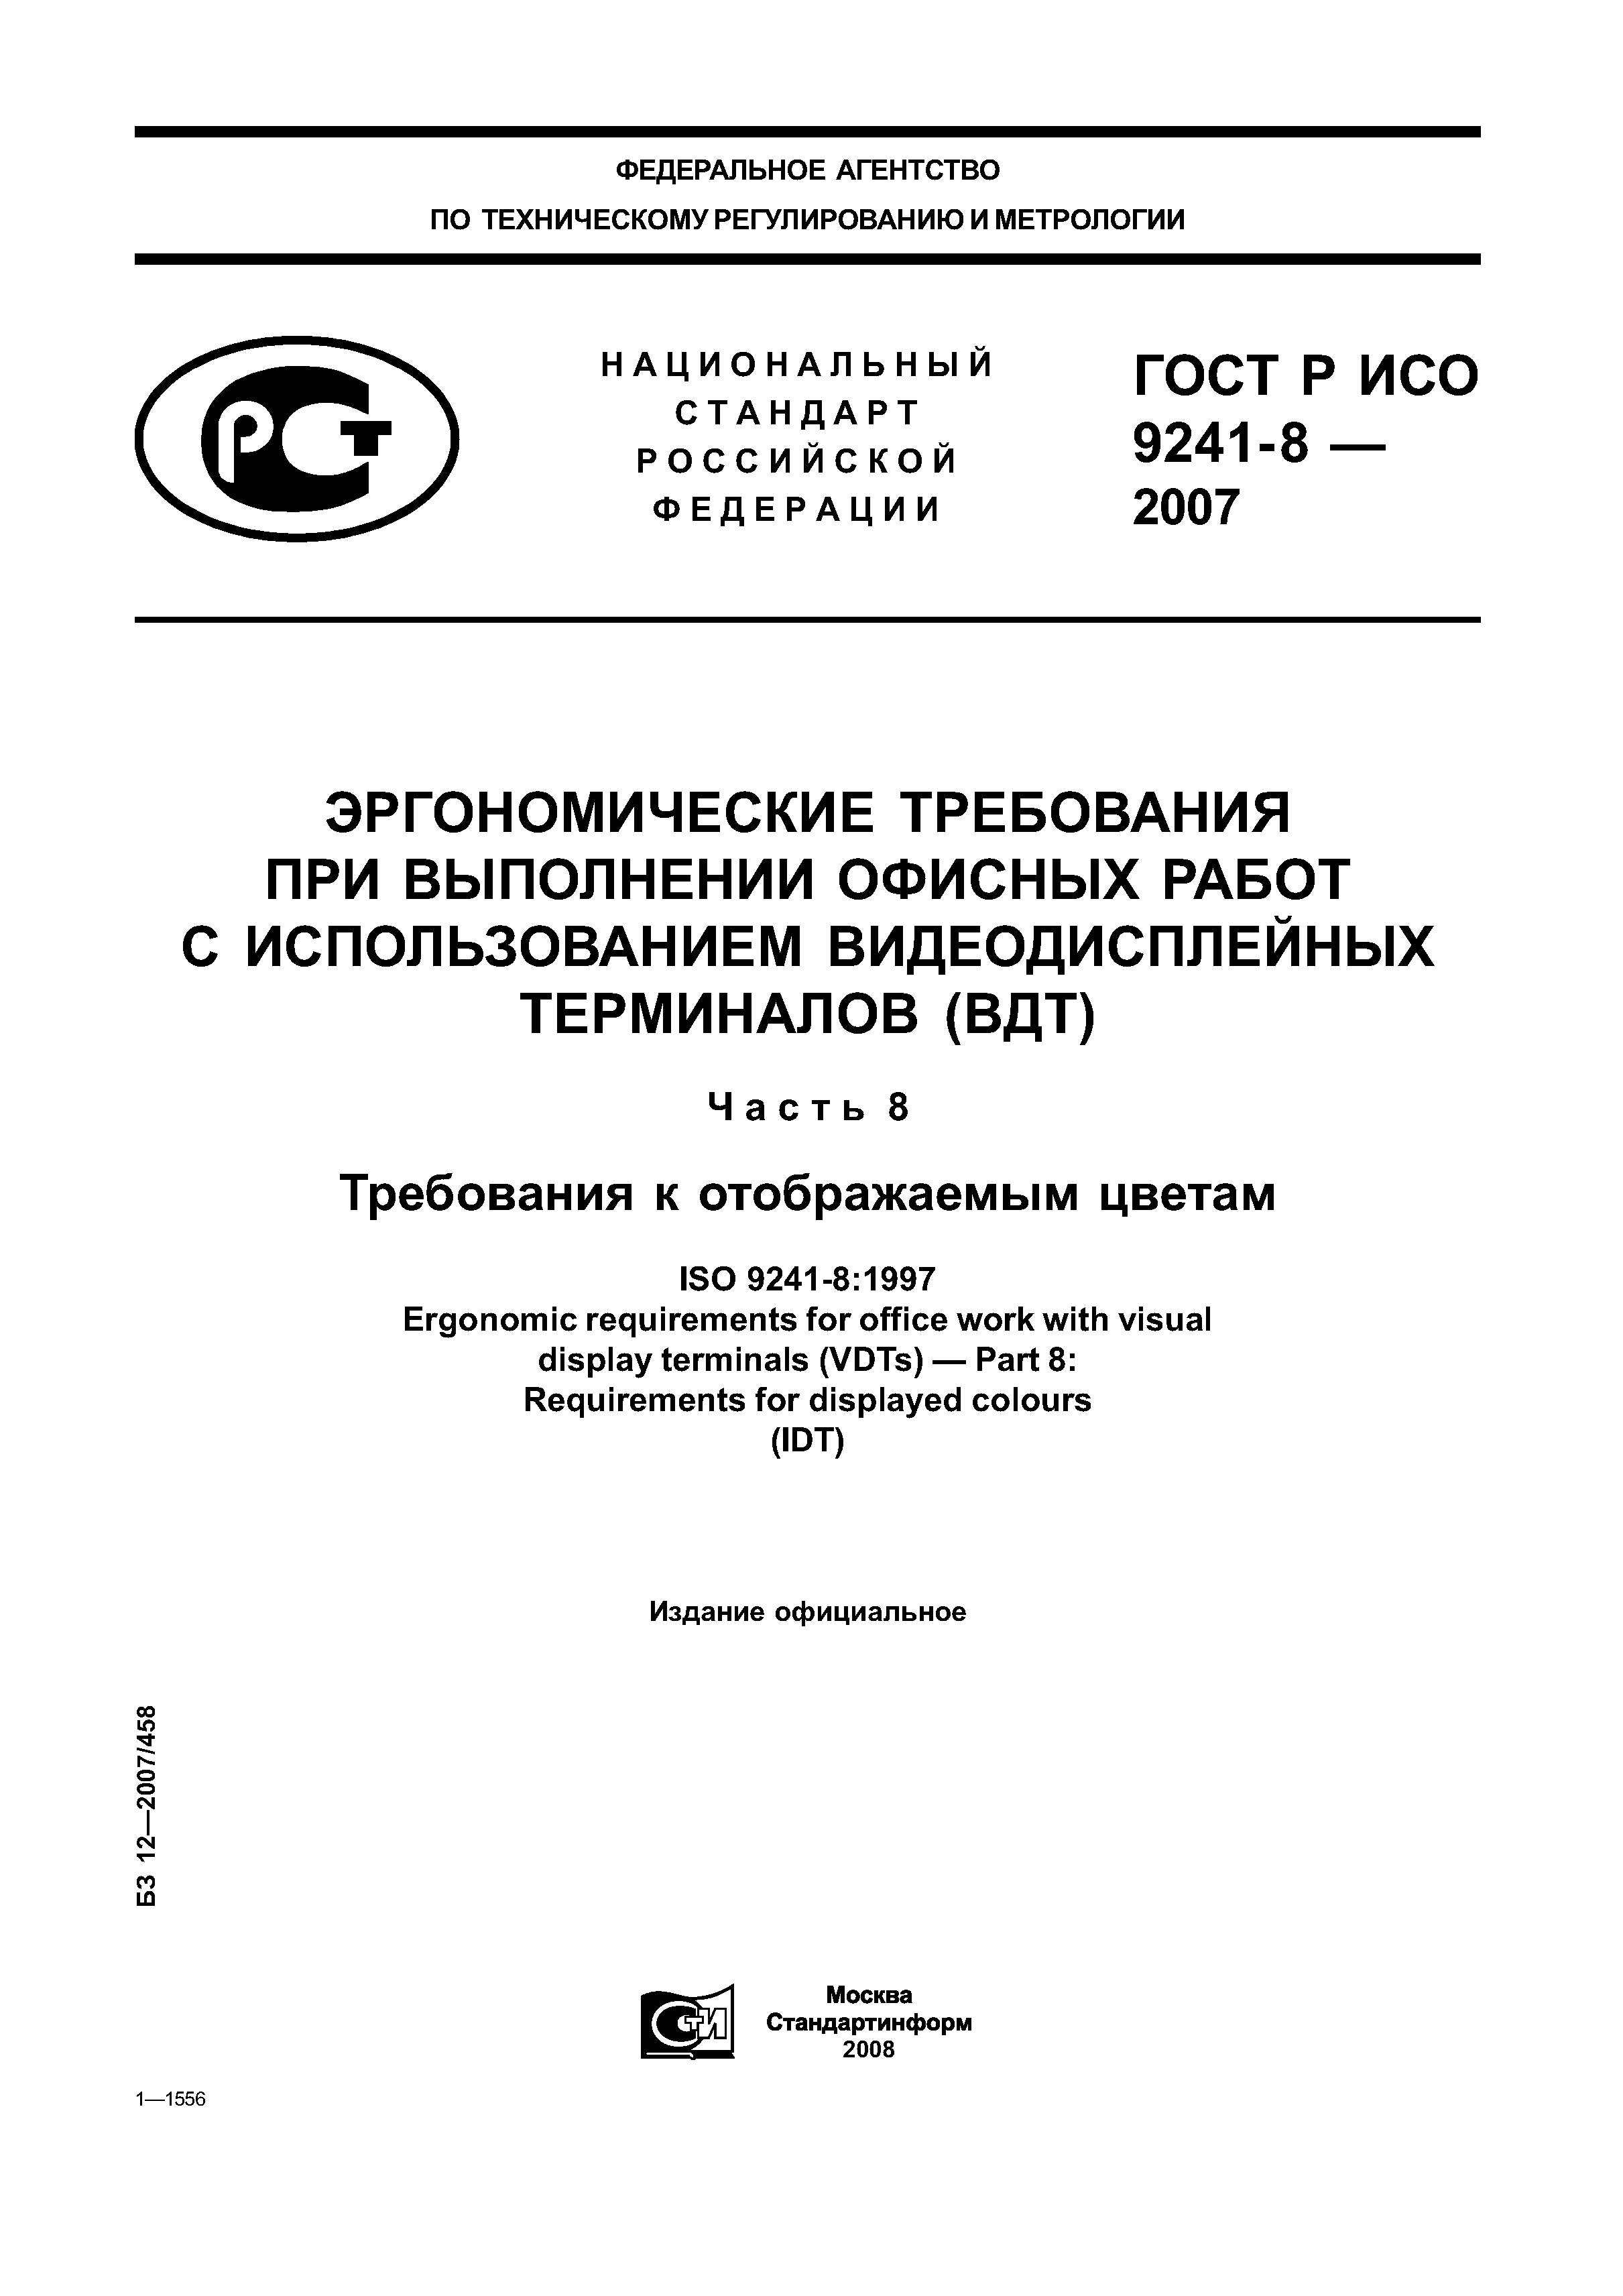 ГОСТ Р ИСО 9241-8-2007